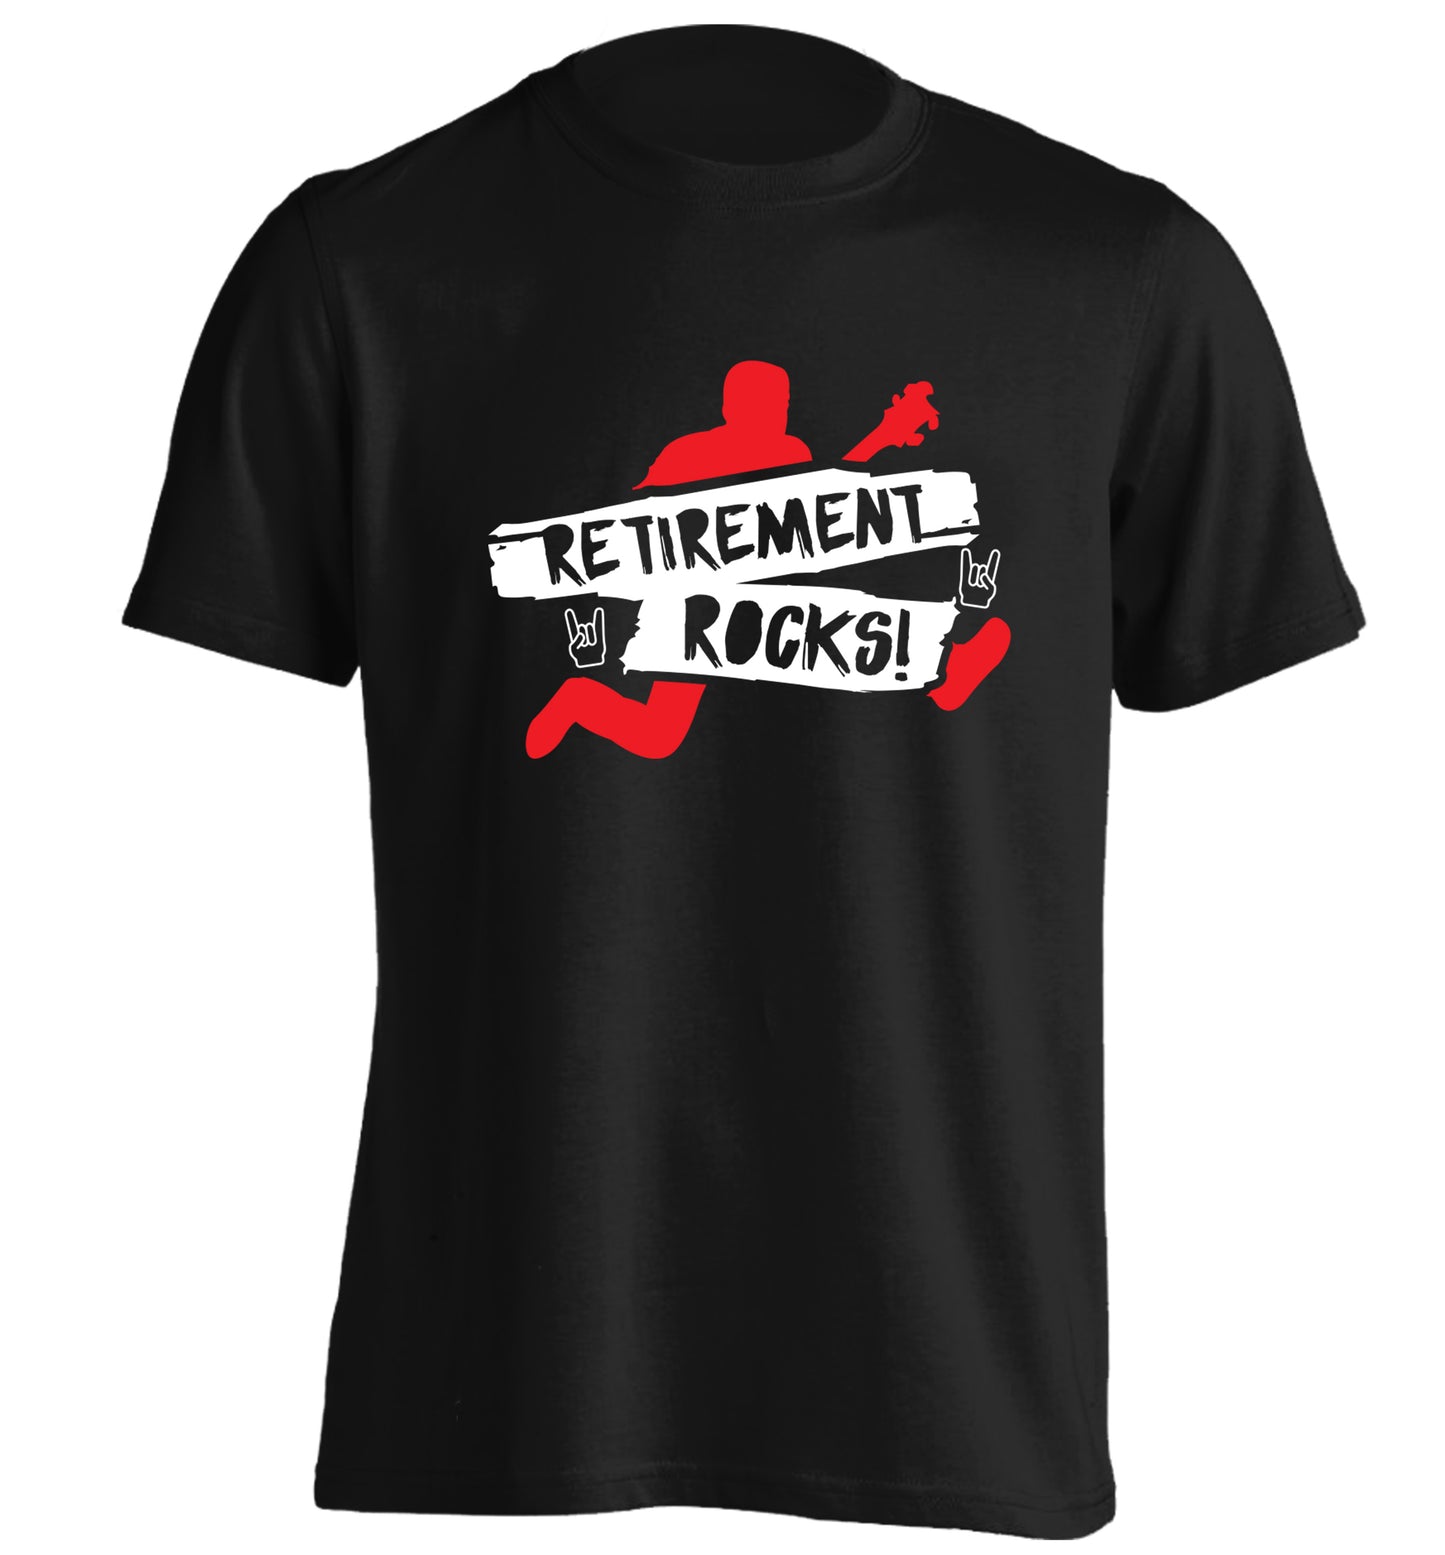 Retirement Rocks adults unisex black Tshirt 2XL